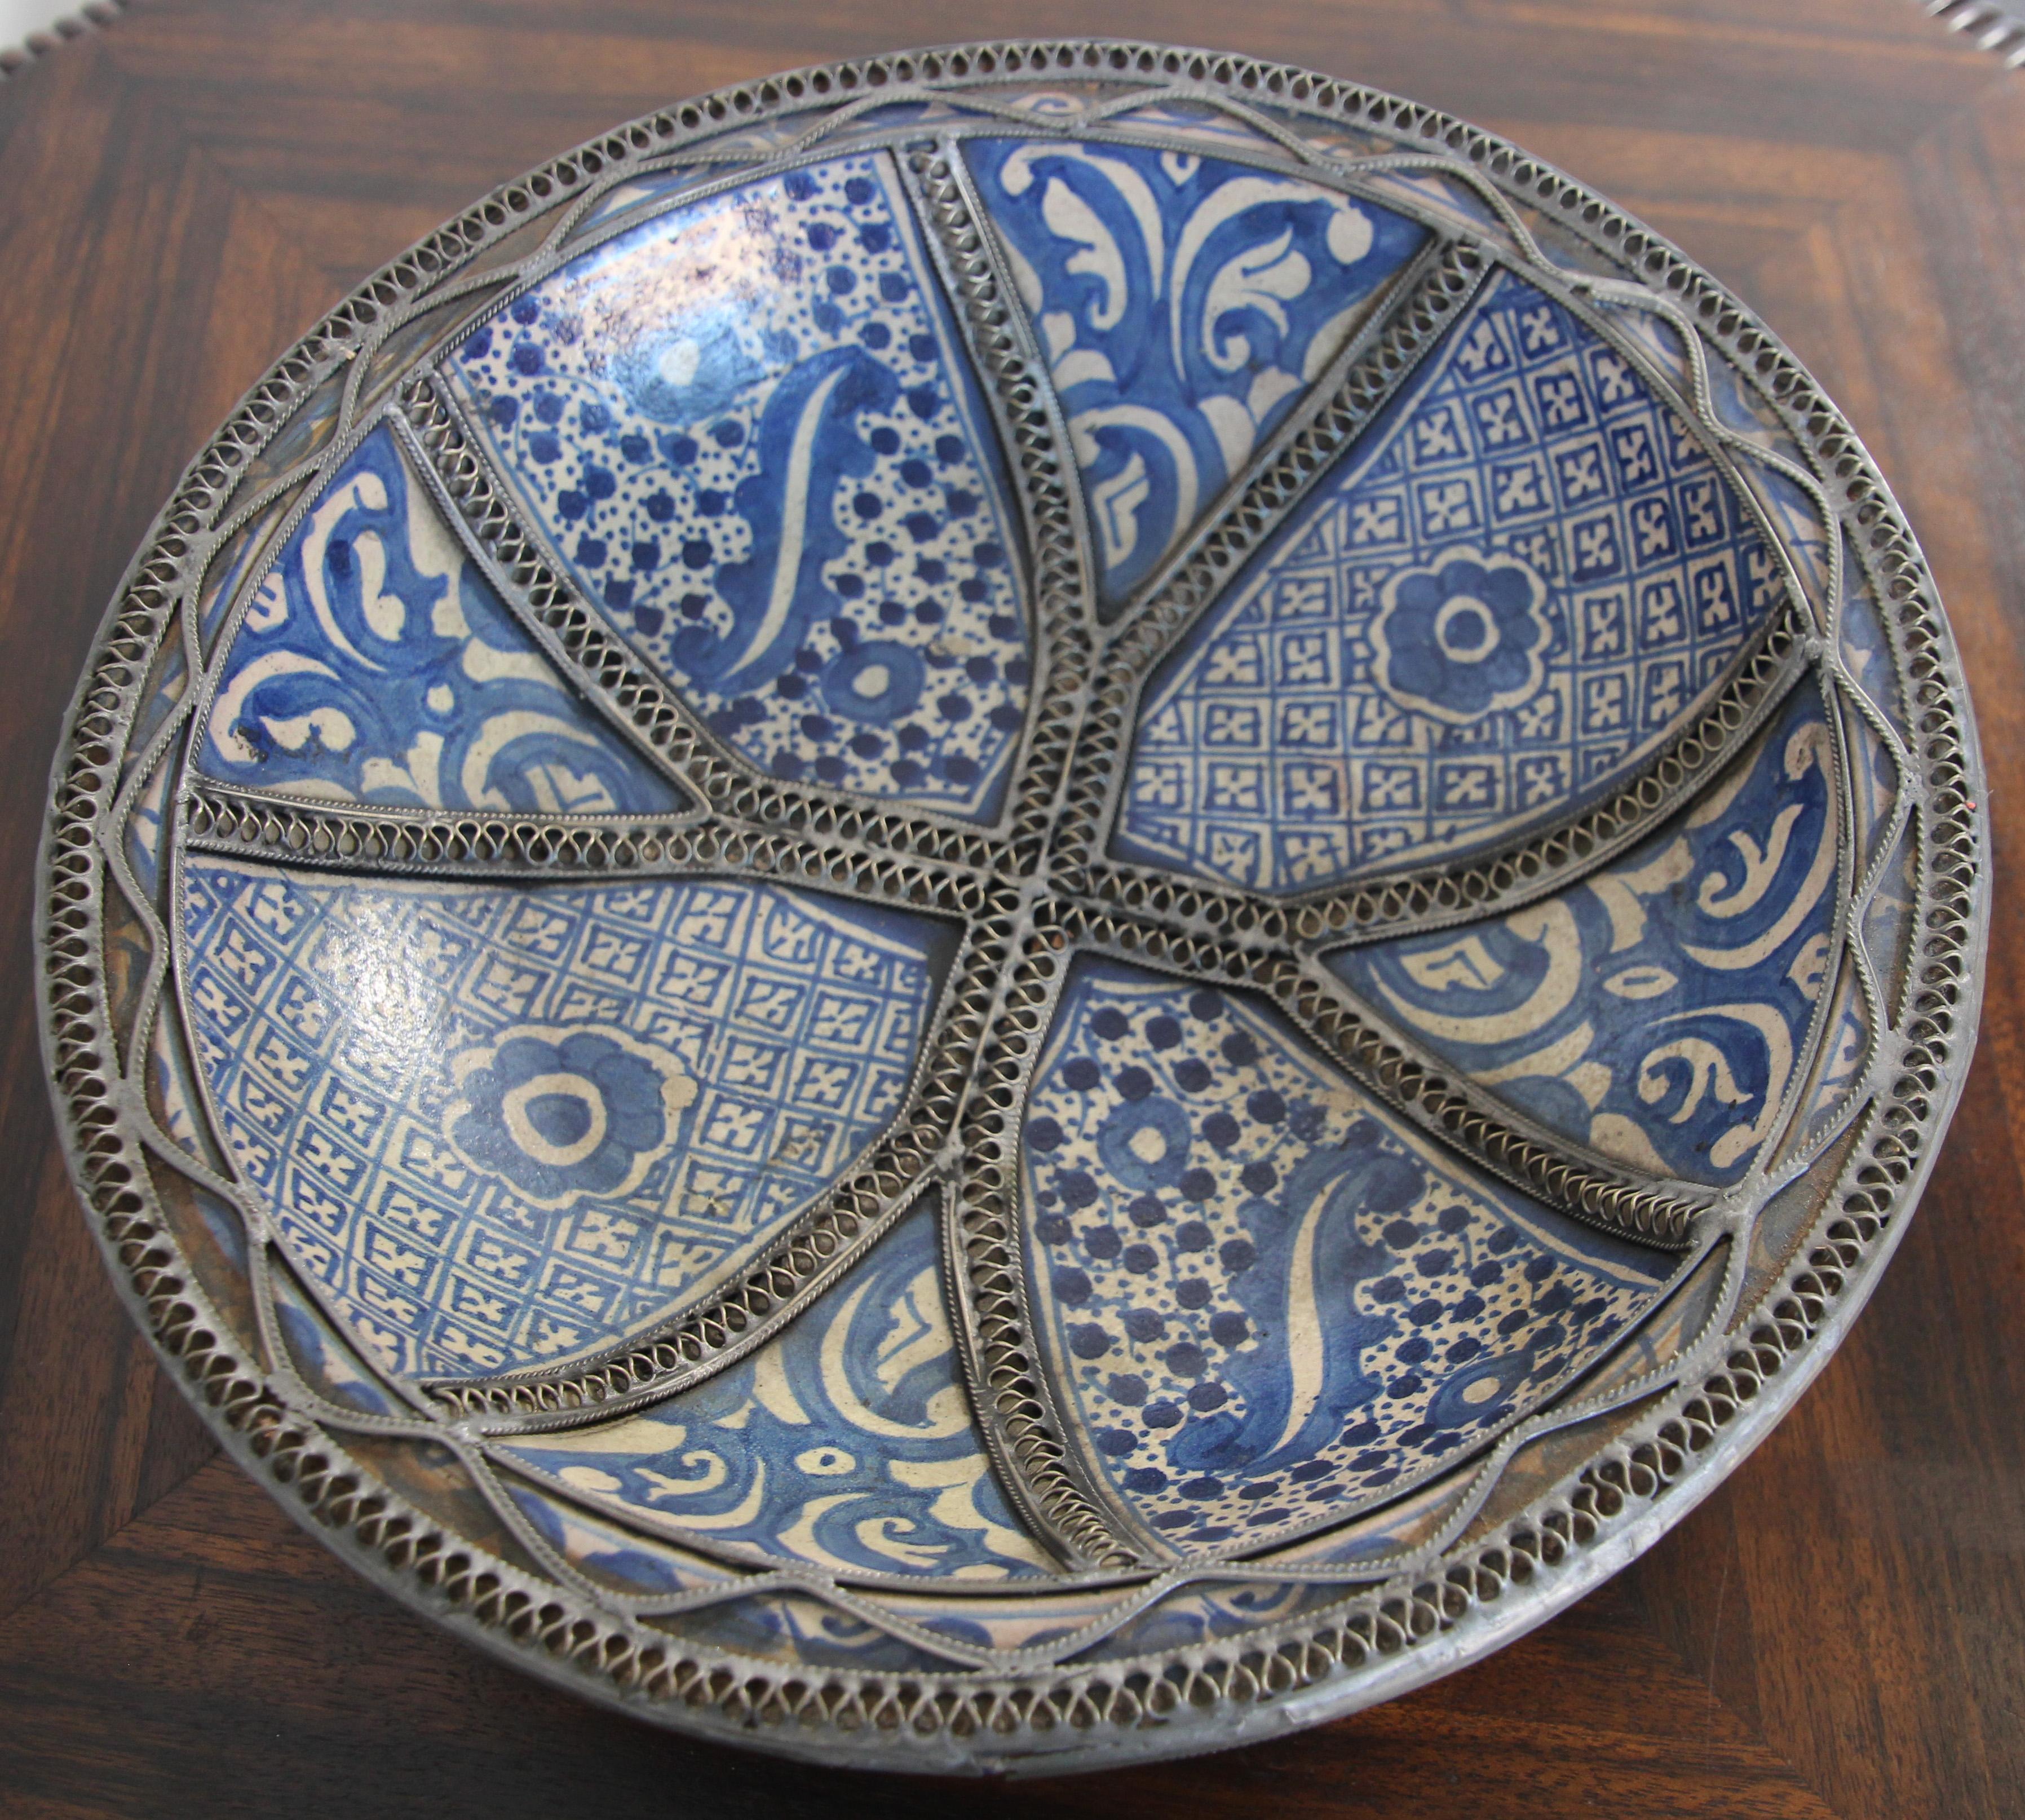 Handgefertigte maurische marokkanische Bleu de Fez dekorative Keramik Schale, Schüssel. 
Keramische Schale in Bleu de Fez, sehr schönes Design, handbemalt von einem Künstler in Fez.
Geometrische und florale maurische Muster, verziert mit filigranem